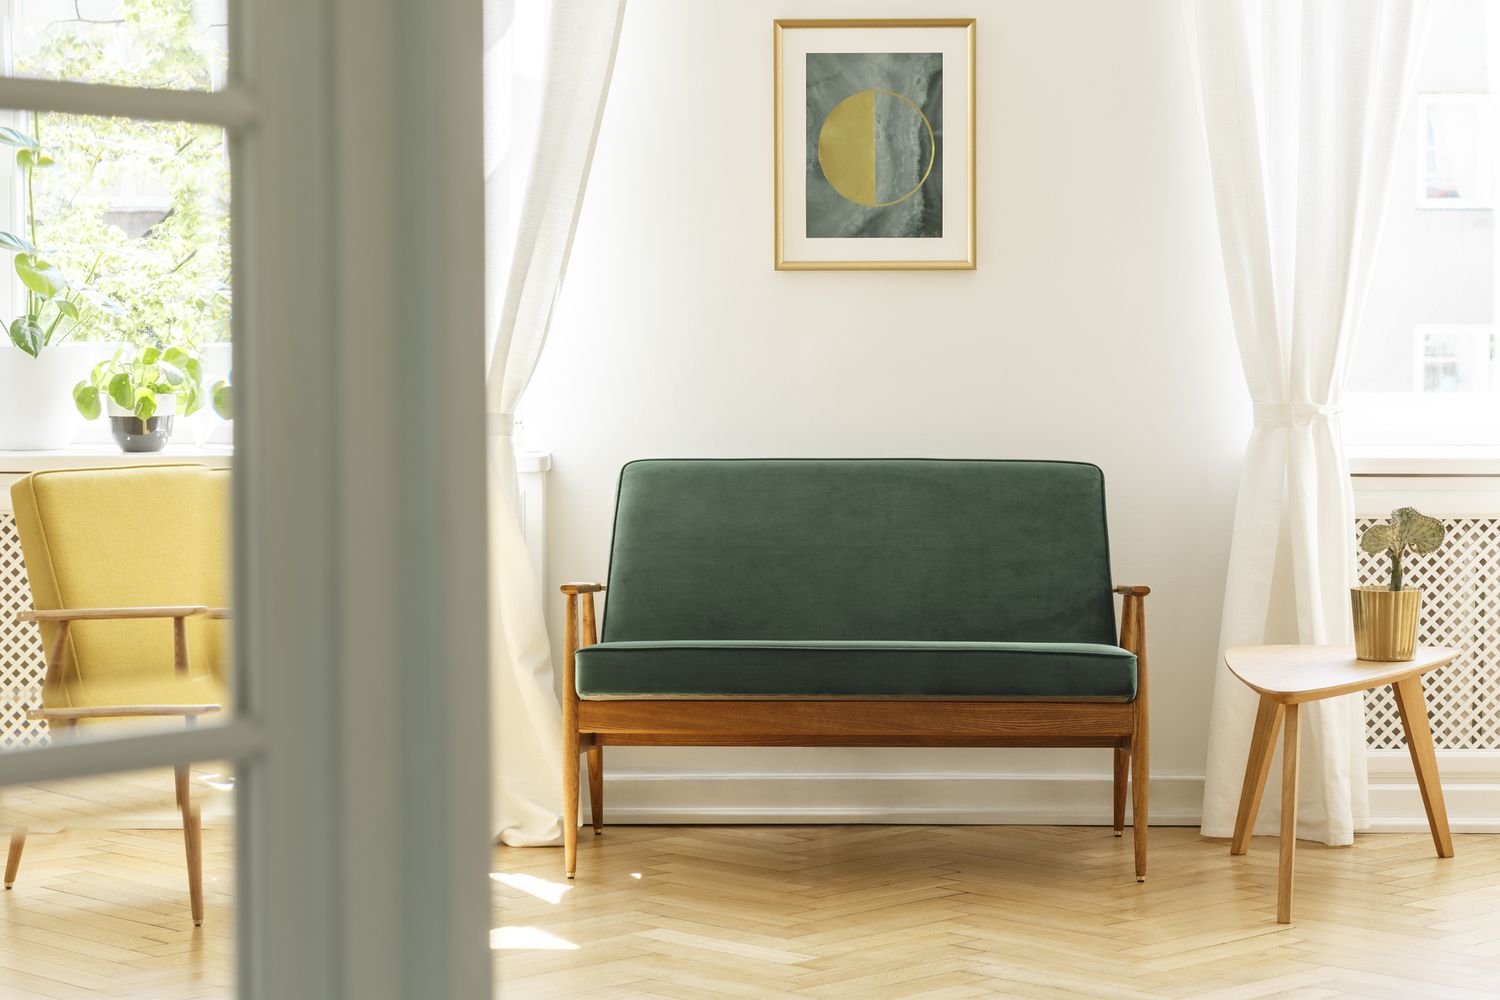 Pôster acima do sofá de madeira verde no interior de uma sala de estar vintage com mesa branca